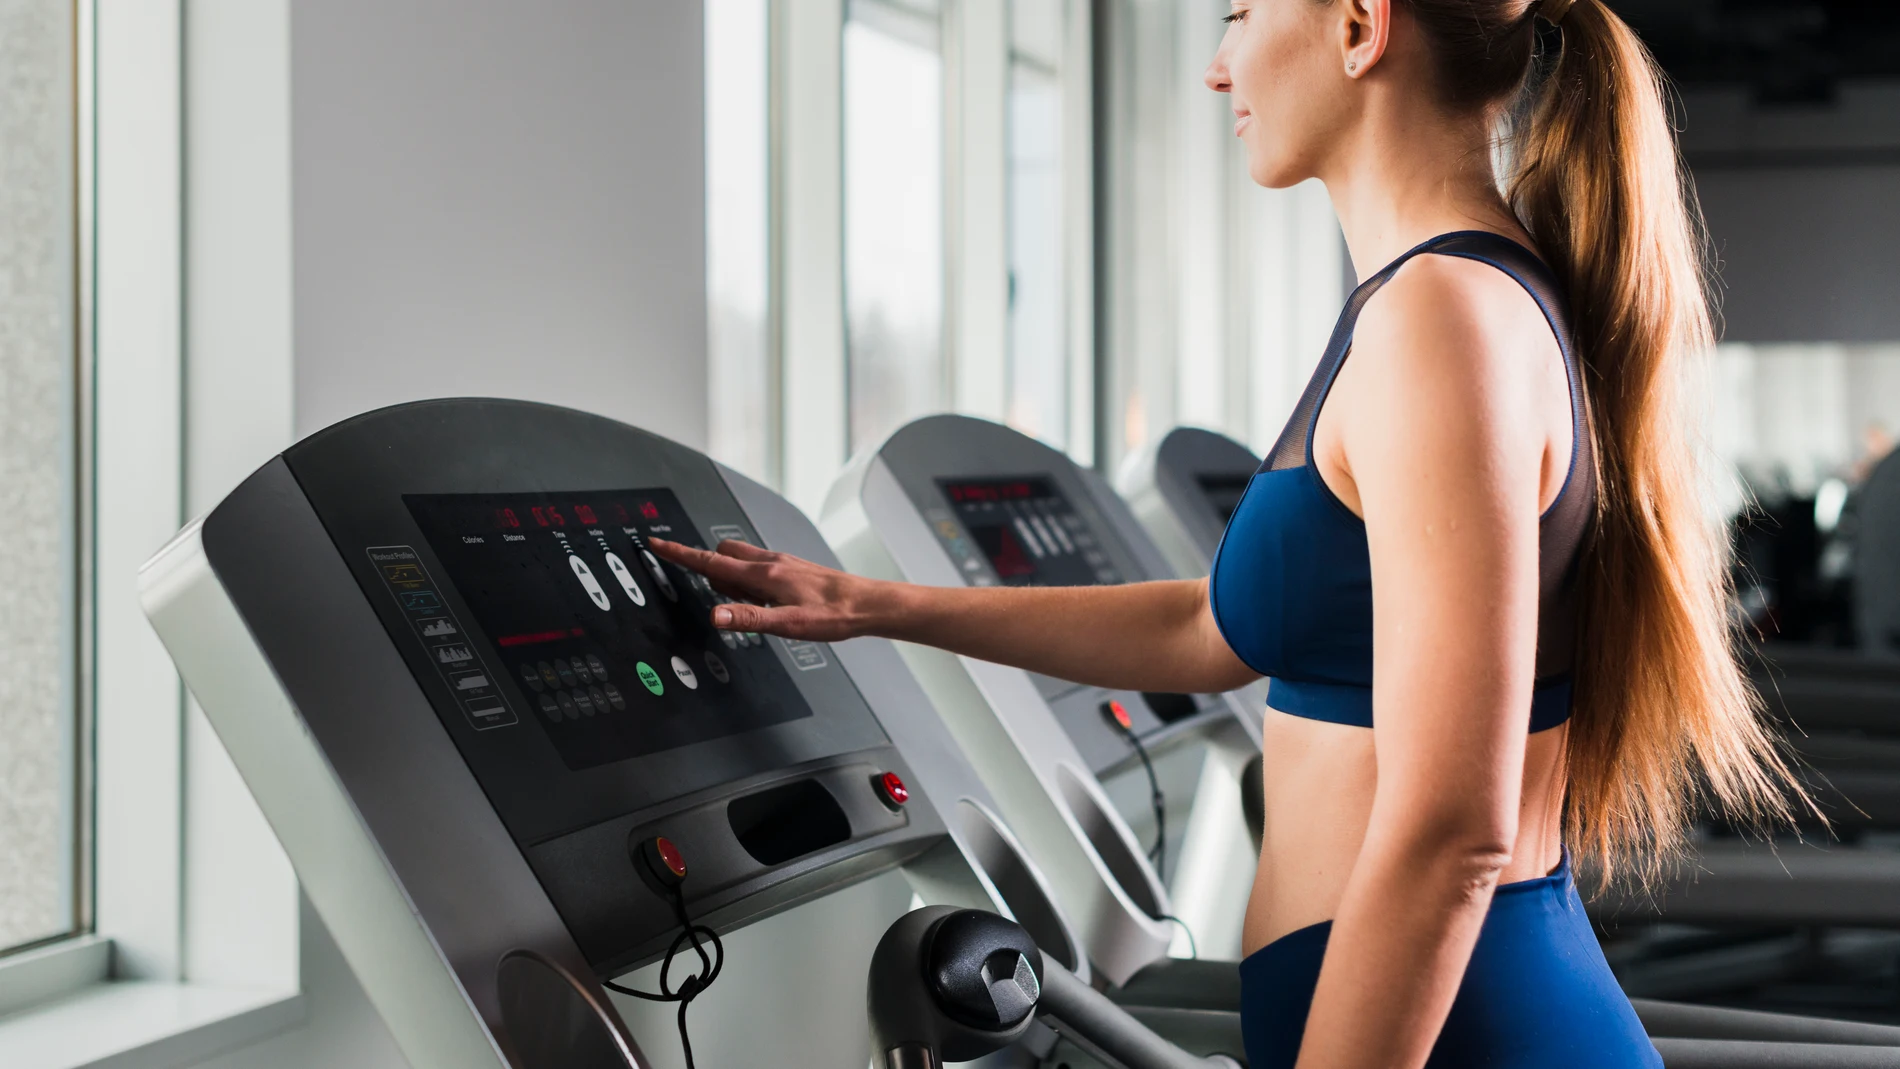 Una entrenadora revela qué ejercicio es mejor para perder peso en mujeres:  ¿cardio o fuerza?